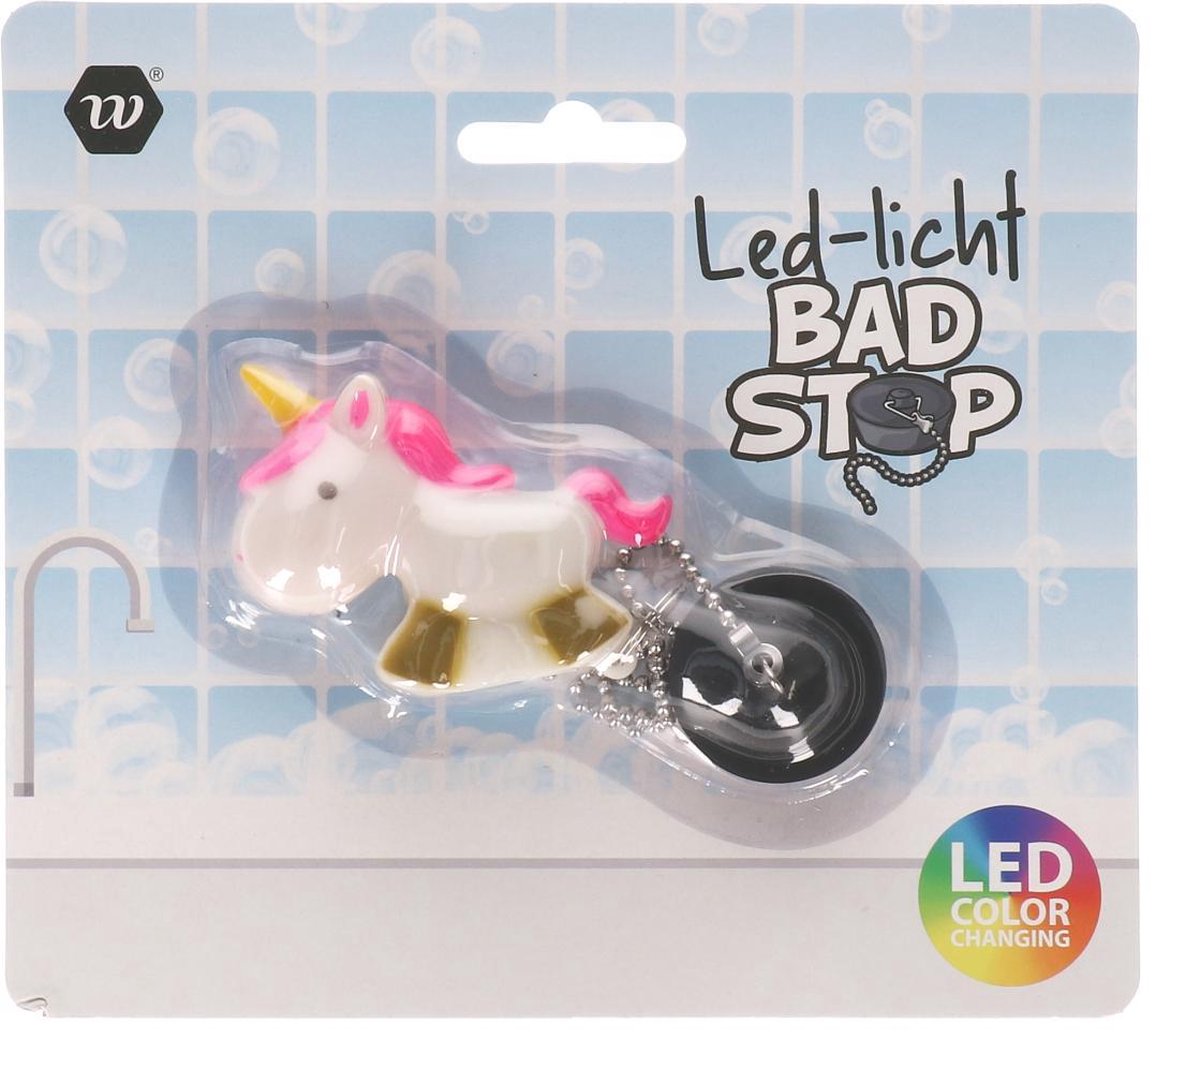 Badstop Unicorn -badstopper - led-licht badstop - led Color Changing - 1 Stuk - unicorn afvoerstop - Afvoerplug - Anti haar afvoer stop - afvoerstopper - Wastafel - Gootsteen - Spoelbak - Bad - Badkamer - Douchebak - Keuken -